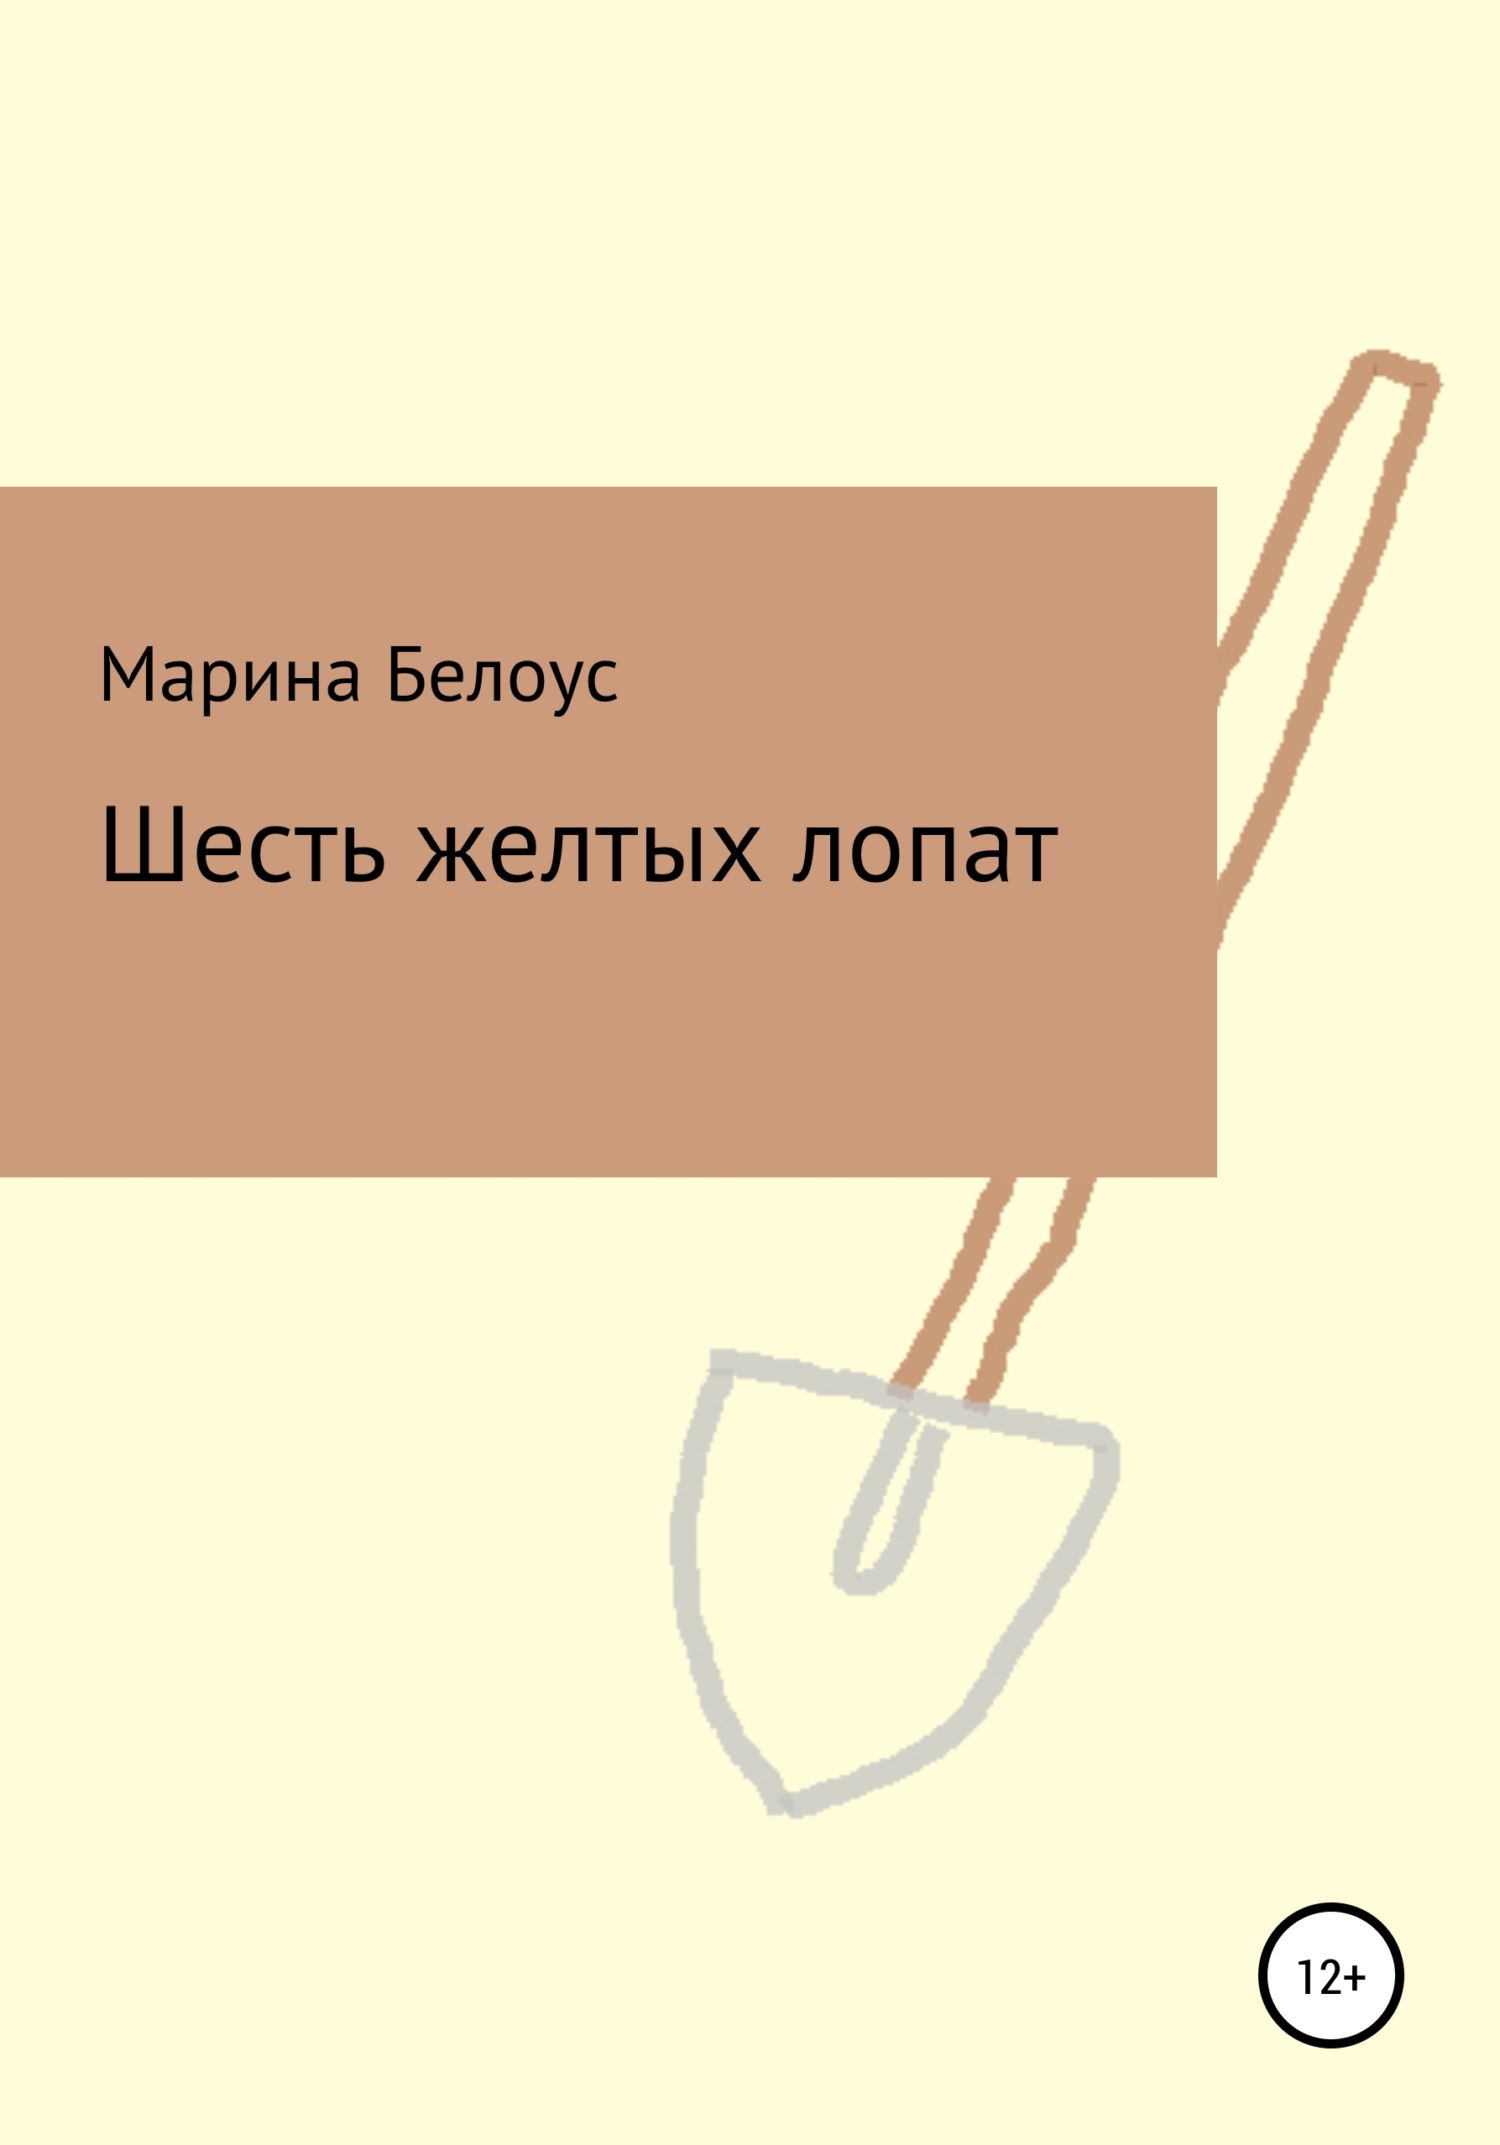 Шесть желтых лопат - Марина Александровна Белоус